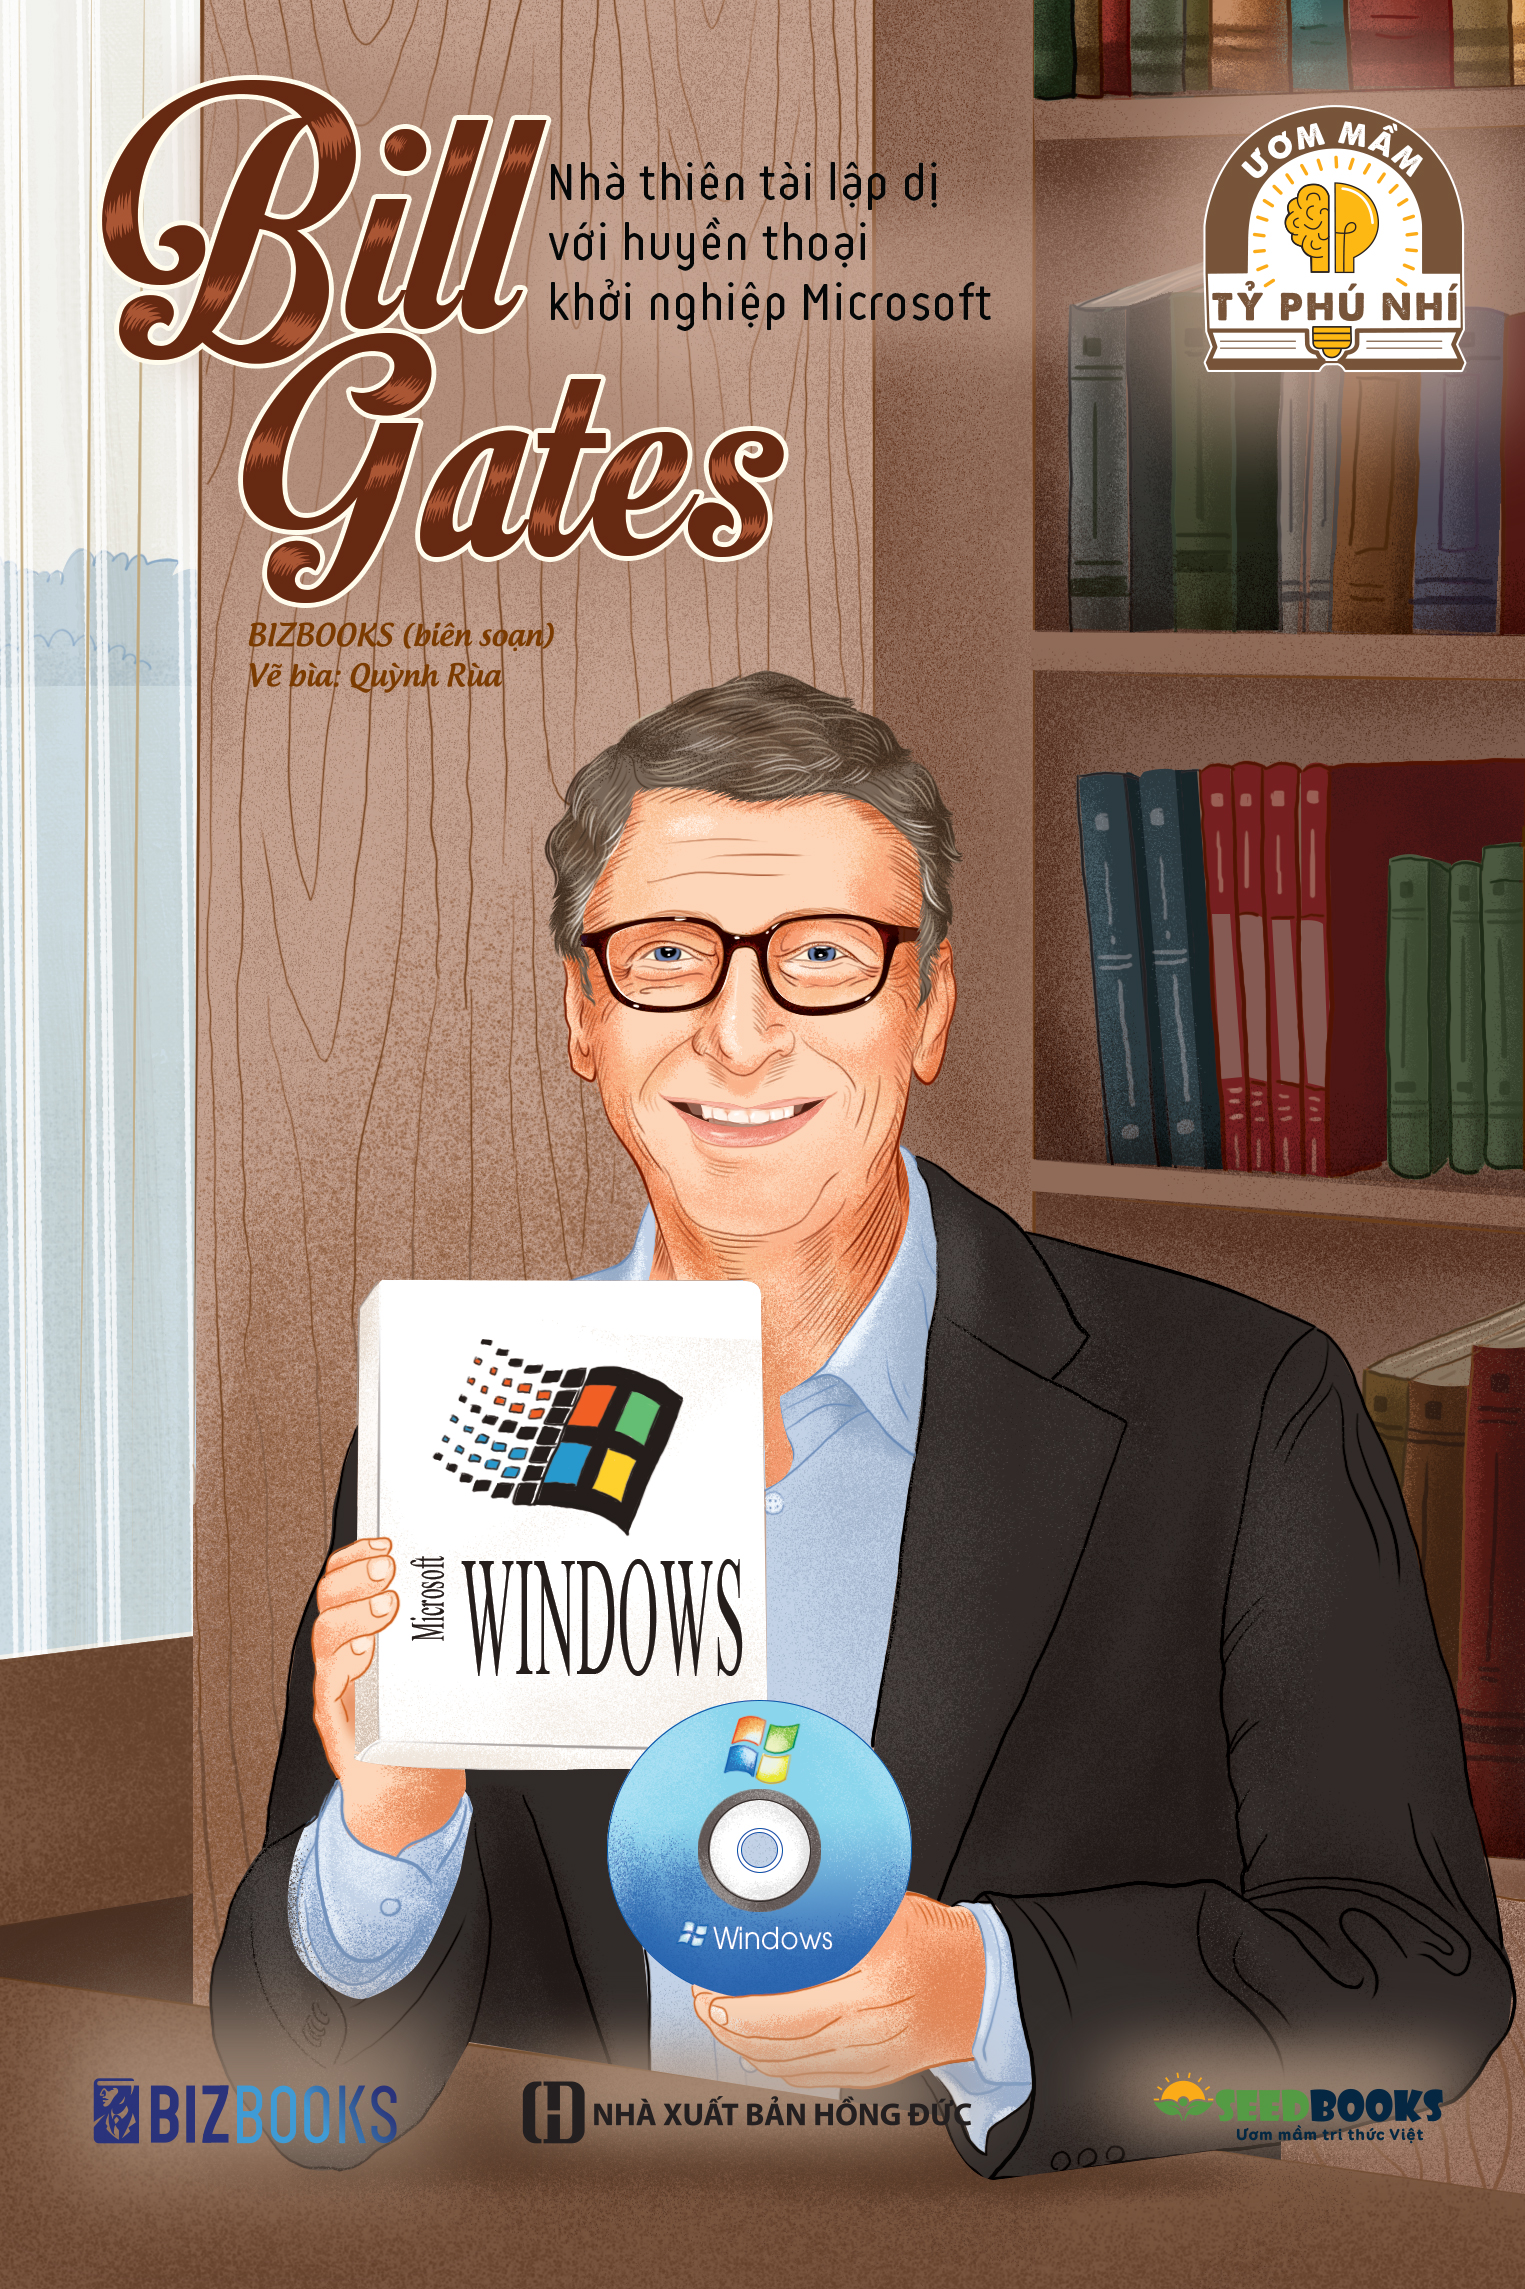 Bill Gates: Nhà thiên tài lập dị với huyền thoại khởi nghiệp Microsoft - Bộ sách ươm mầm tỷ phú nhí Bizbooks